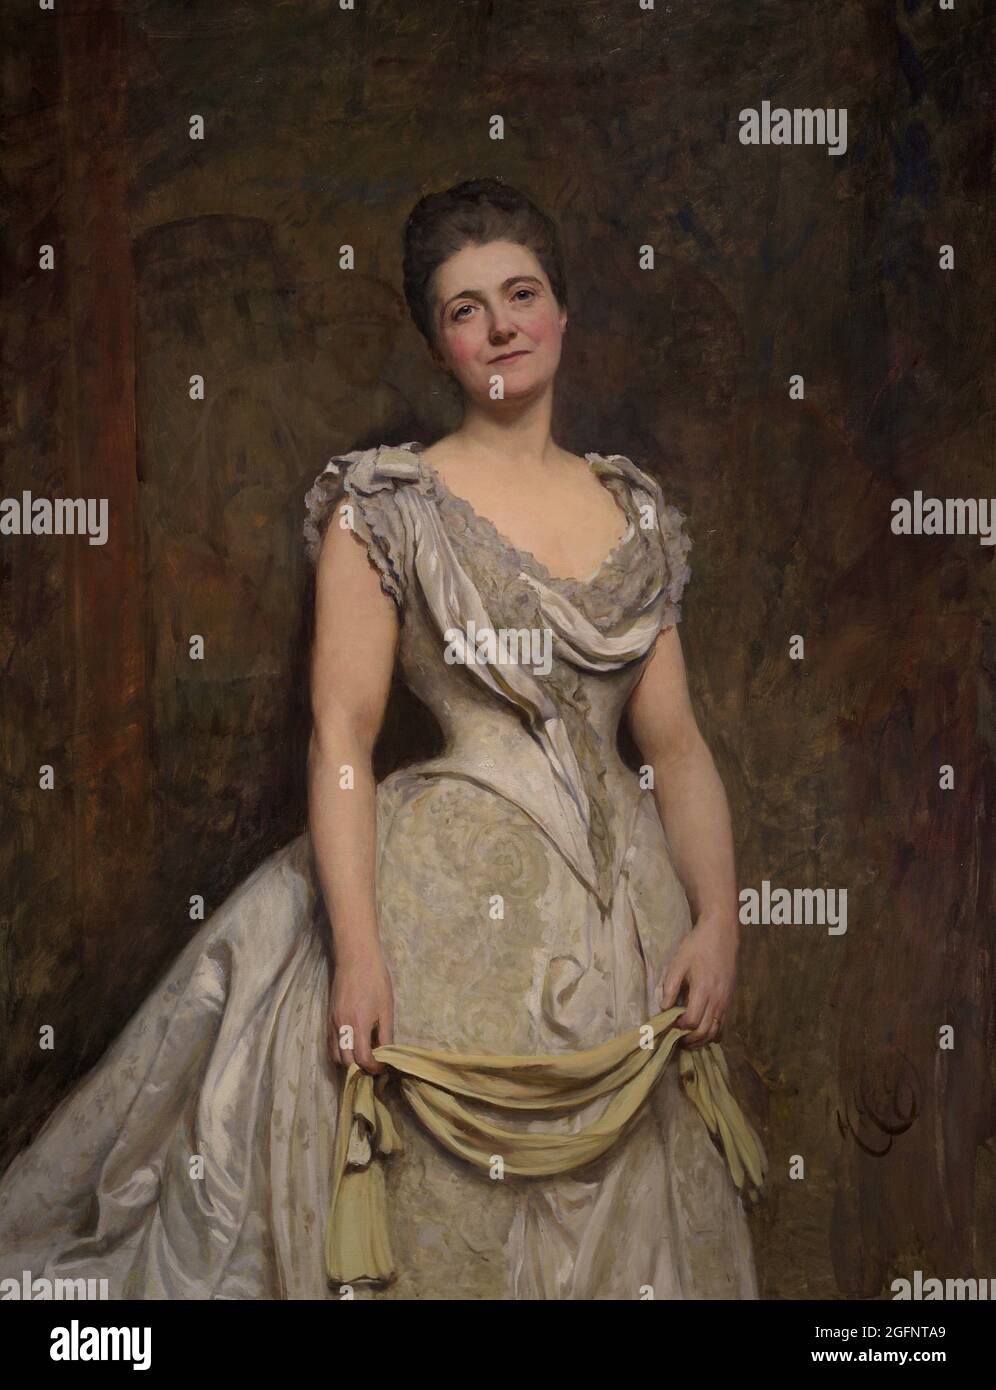 Emilia Francis Strong (1840-1904), bekannt als Lady Dilke. Britischer Schriftsteller. Porträt von Sir Hubert von Herkomer (1849-1914). Öl auf Leinwand (139,7 x 109,2 cm), 1887. Zu diesem Zeitpunkt war sie 46 Jahre alt. National Portrait Gallery. London, England, Vereinigtes Königreich. Stockfoto